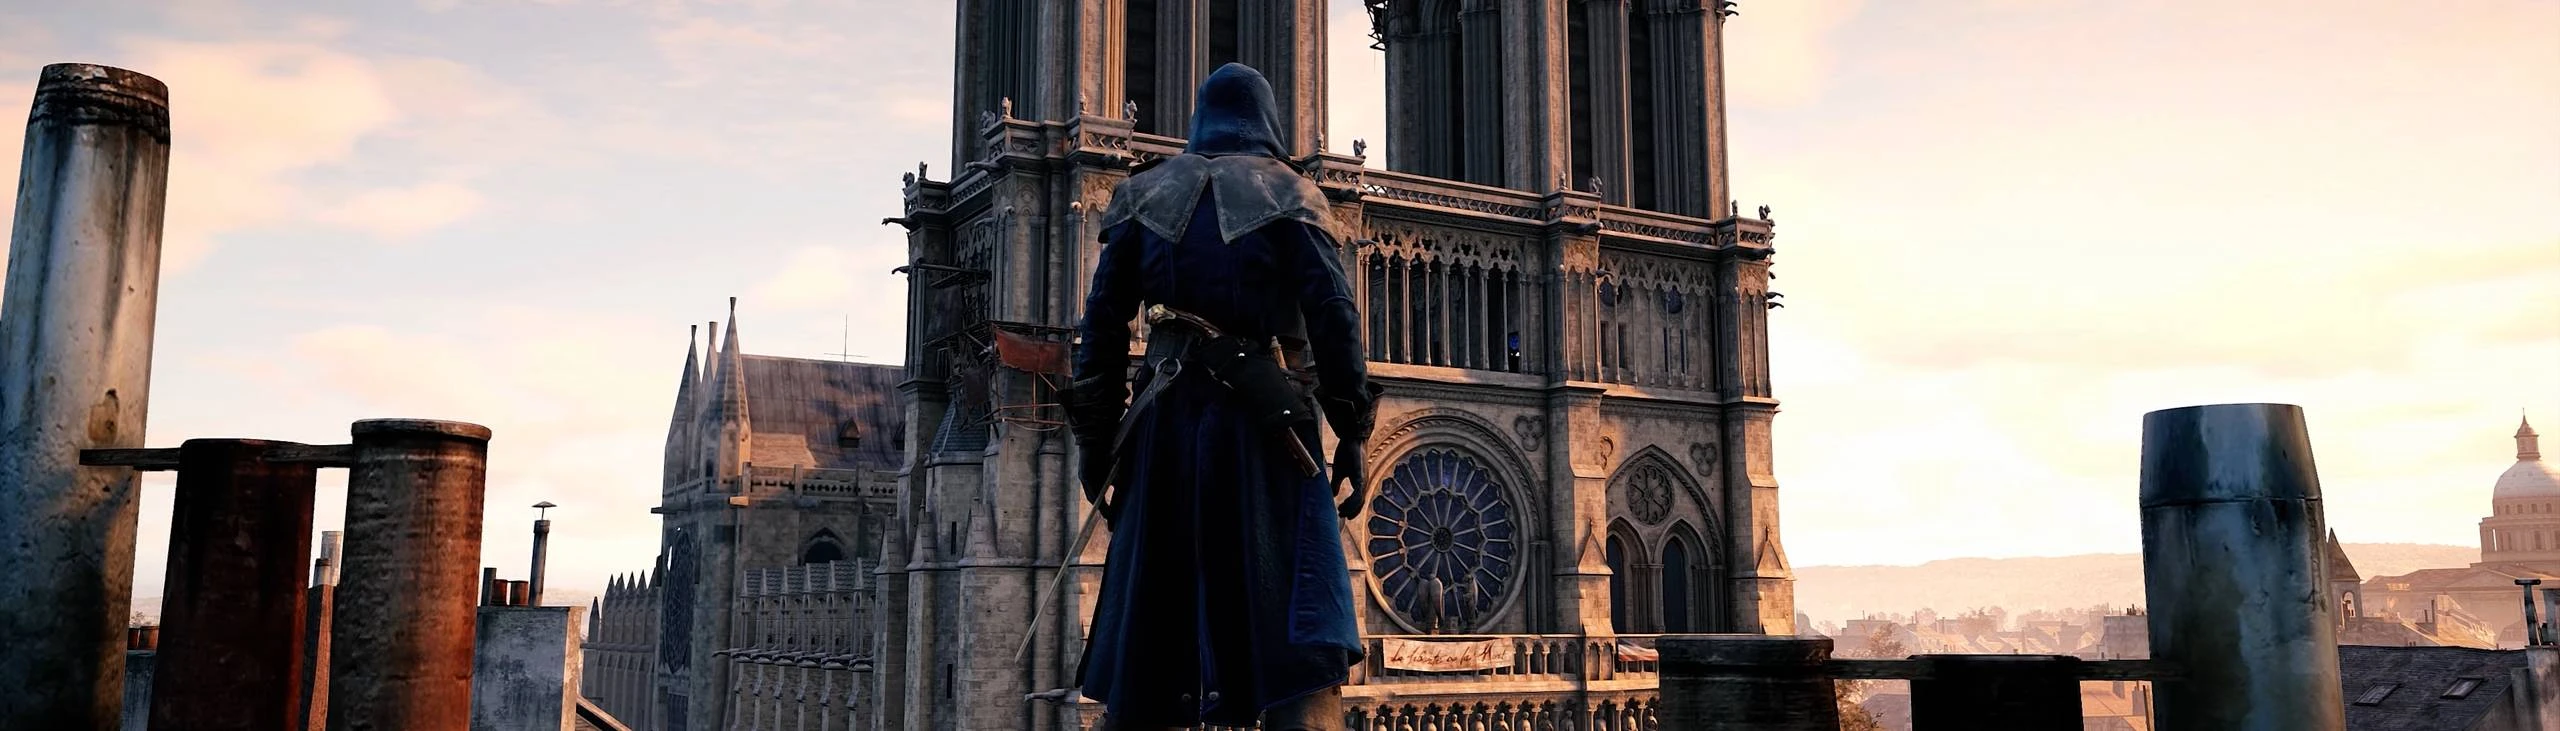 Assassin s Creed: Unity fica ainda mais lindo graças a um Mod Gráfico que  aplica Ray-Tracing